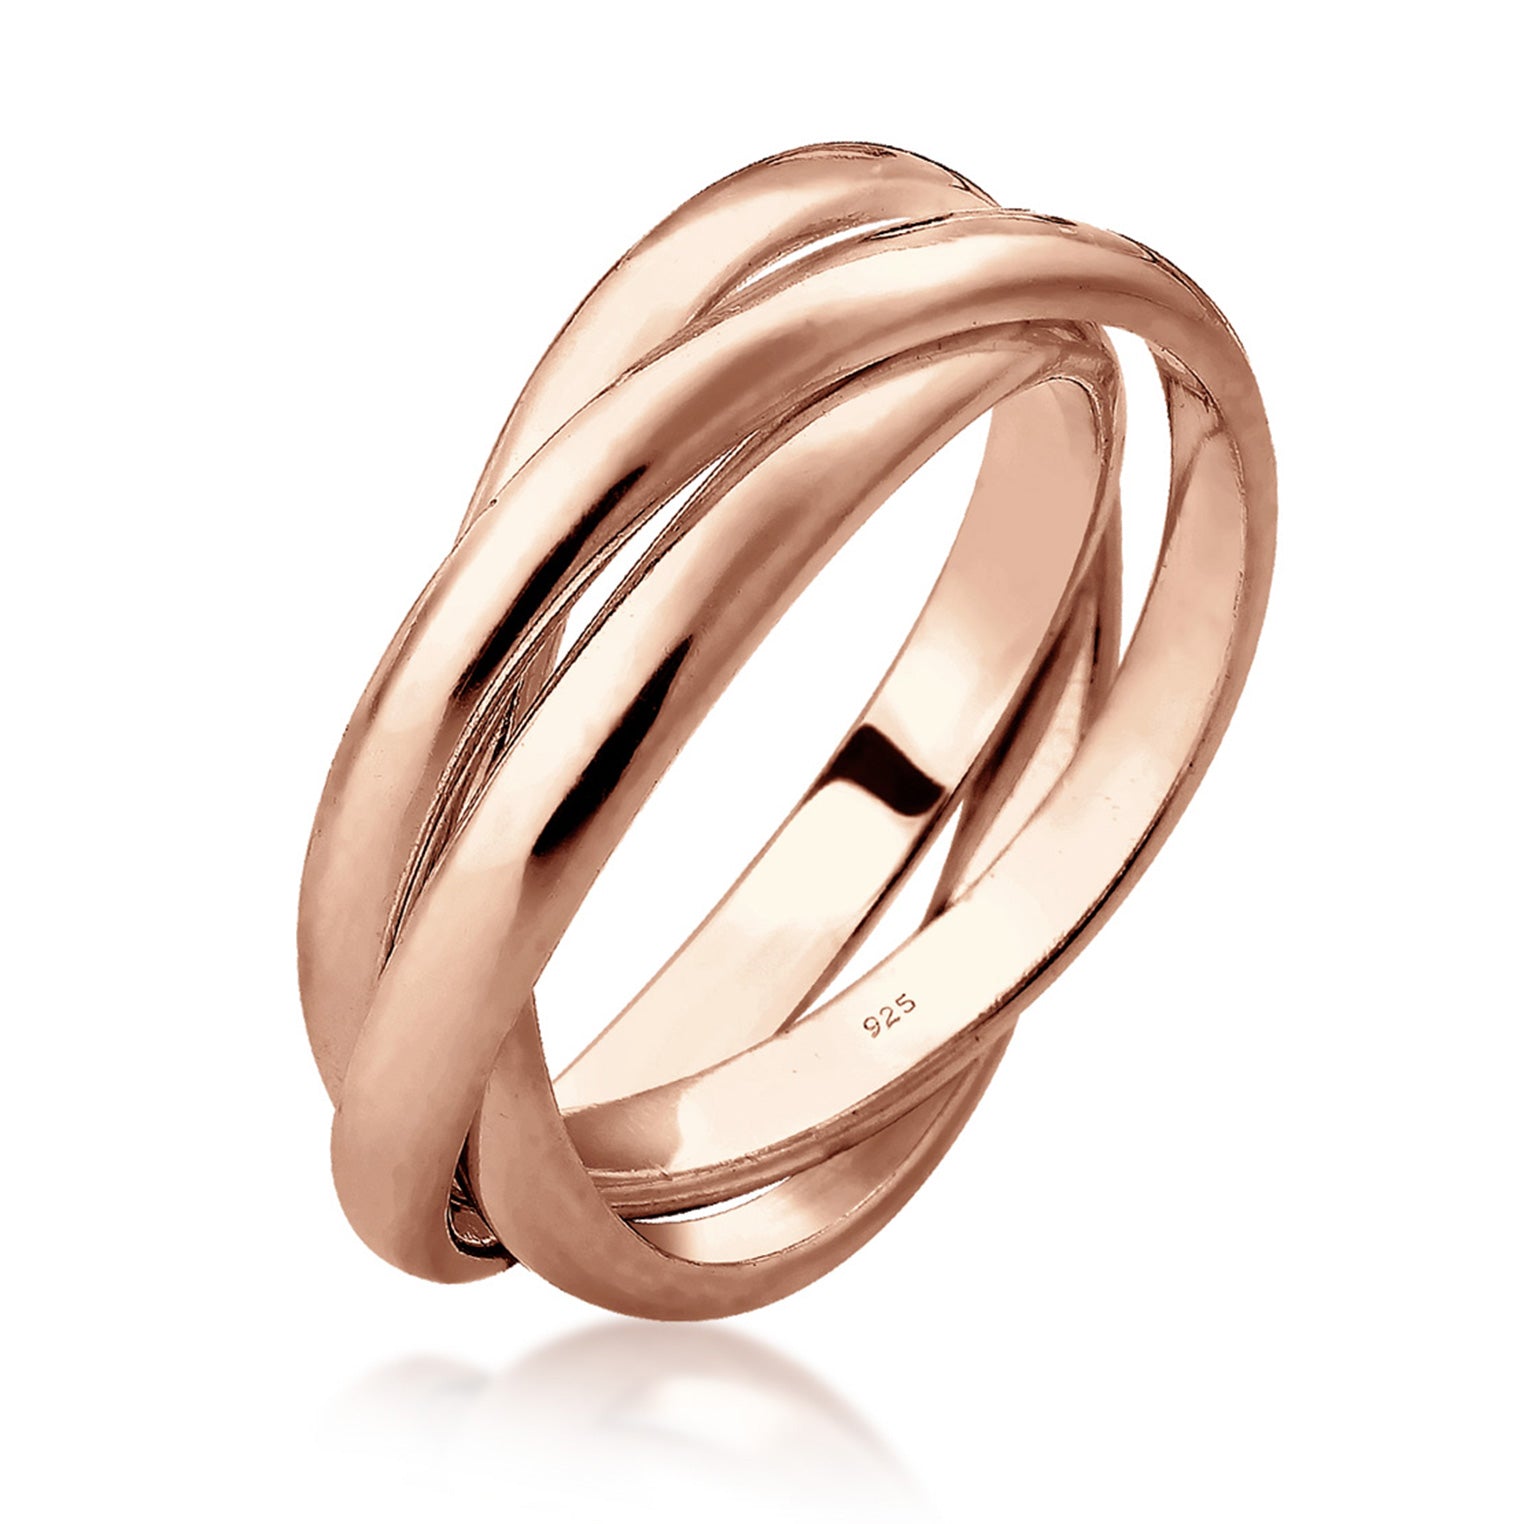 Ringe aus Silber oder Elli | Jewelry – TOP Elli Gold Auswahl | kaufen bei